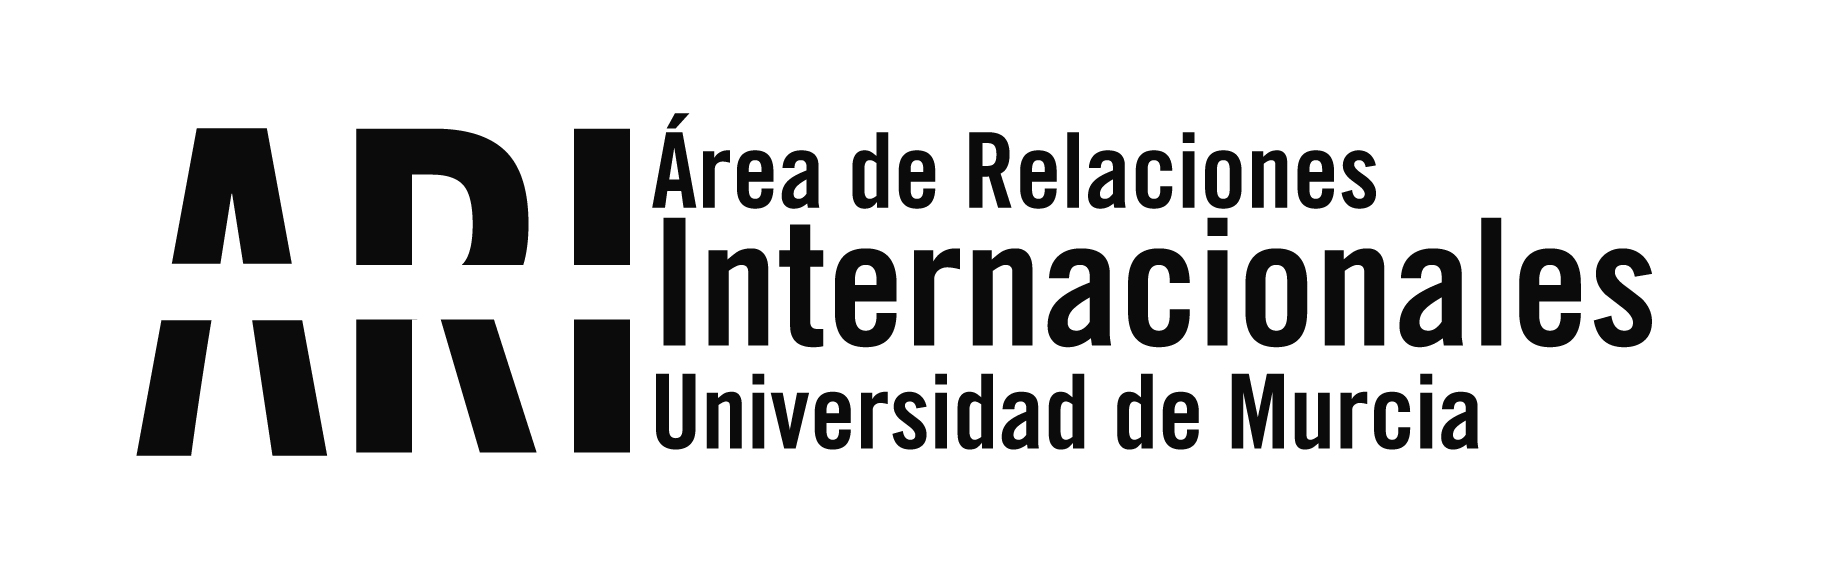 Abierta la Convocatoria para participar en el Programa Intensivo Erasmus+ "NEW FACES" en Oporto - Área de Relaciones Internacionales